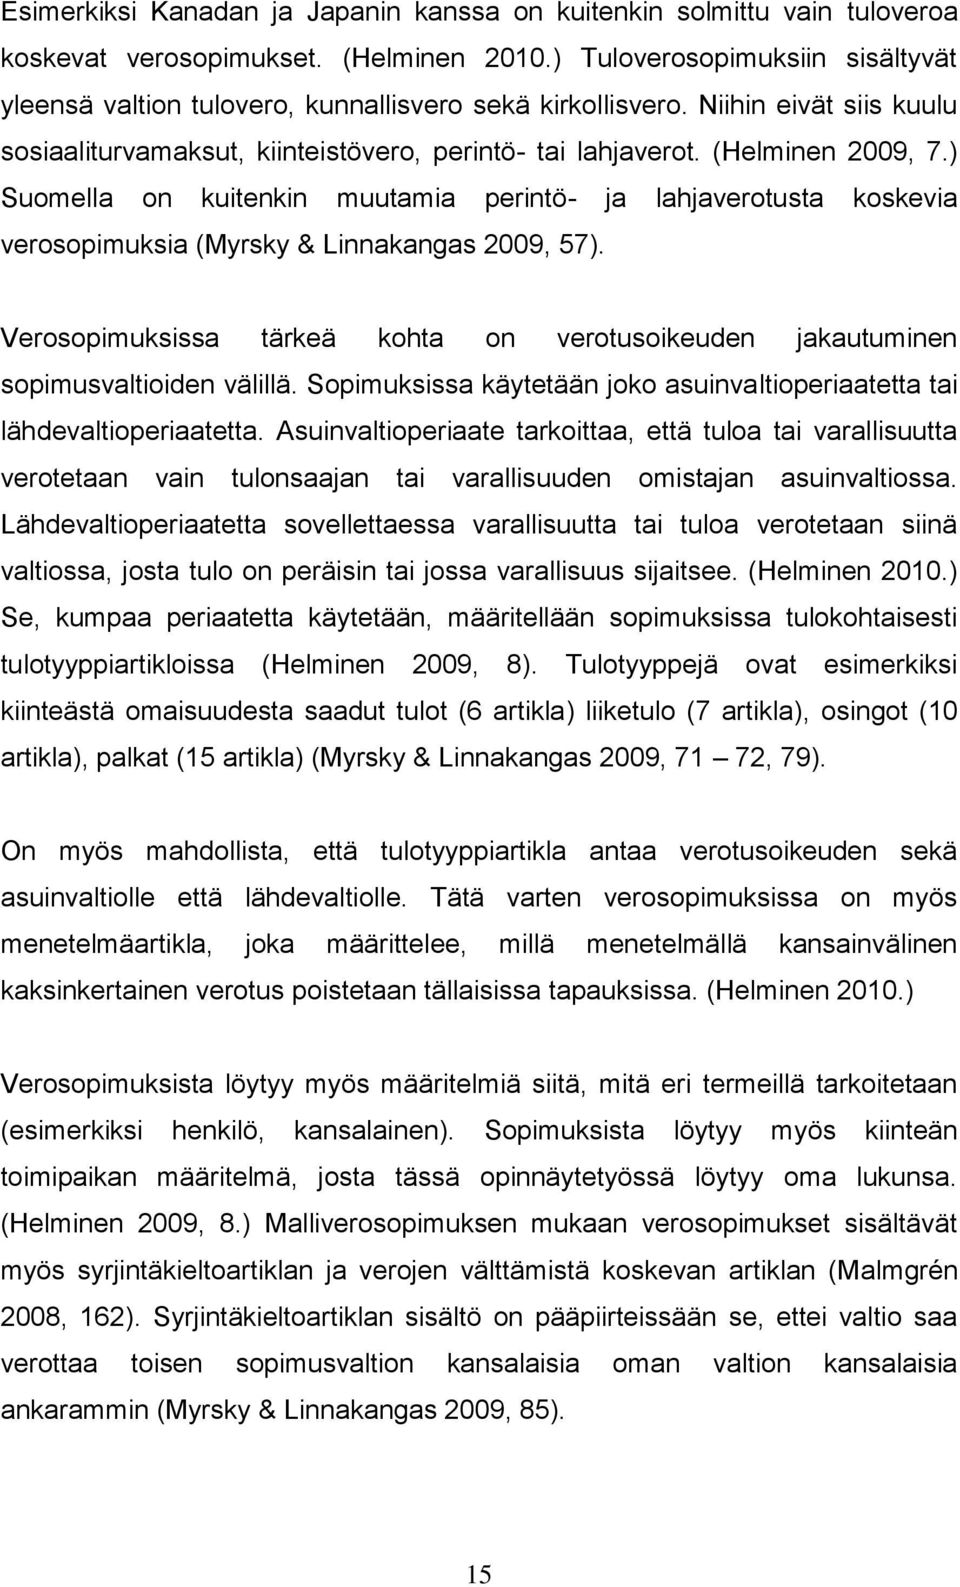 ) Suomella on kuitenkin muutamia perintö- ja lahjaverotusta koskevia verosopimuksia (Myrsky & Linnakangas 2009, 57).